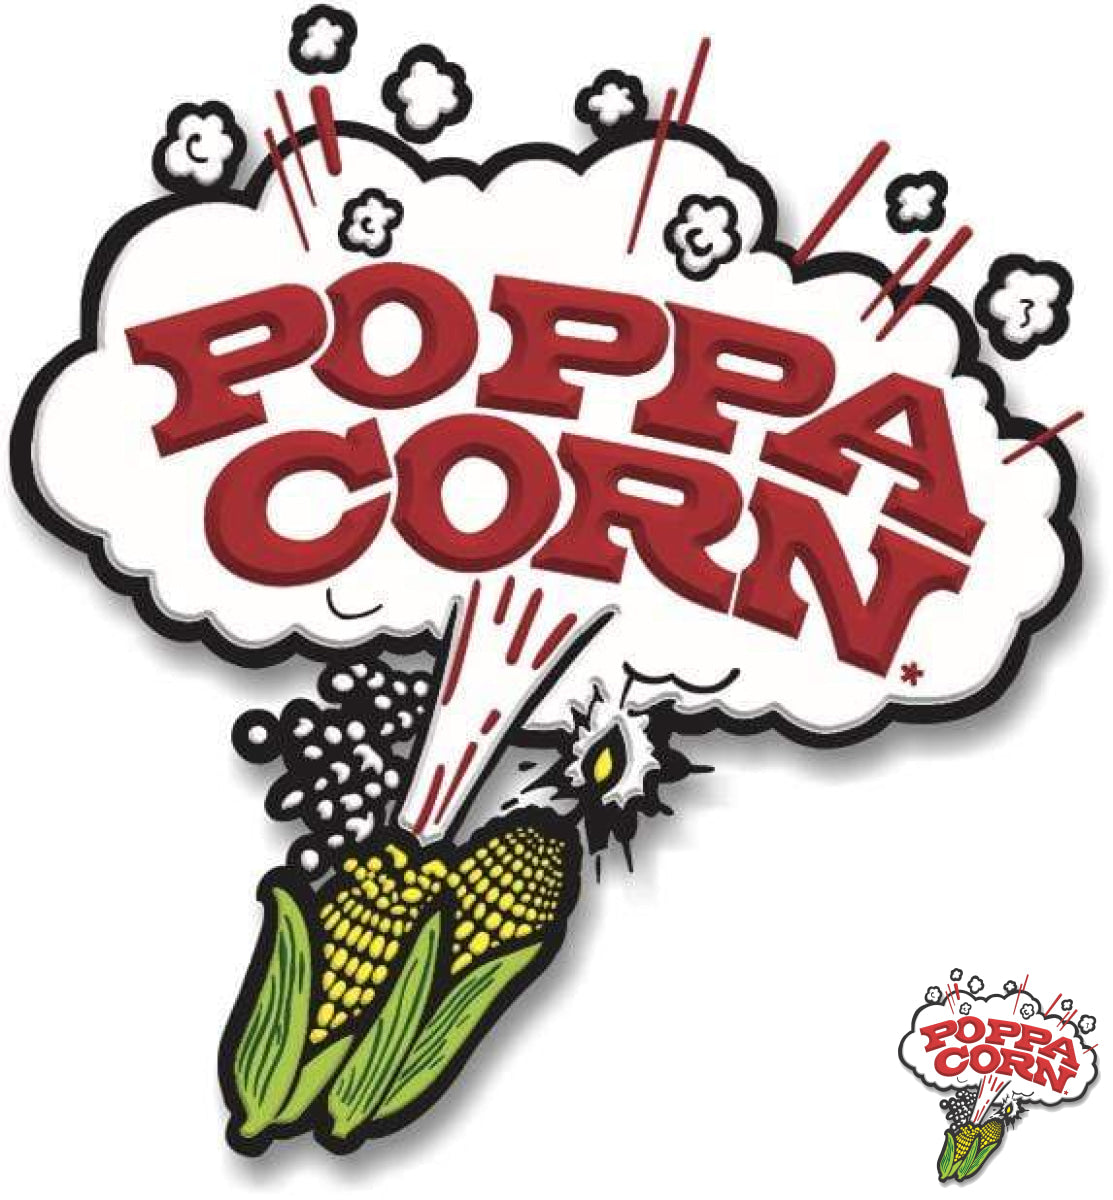 OIL004 - Poppa Corn's Pour & Pop Bag IN Box Popping Oil - 15.87KG BIB - Poppa Corn Corp